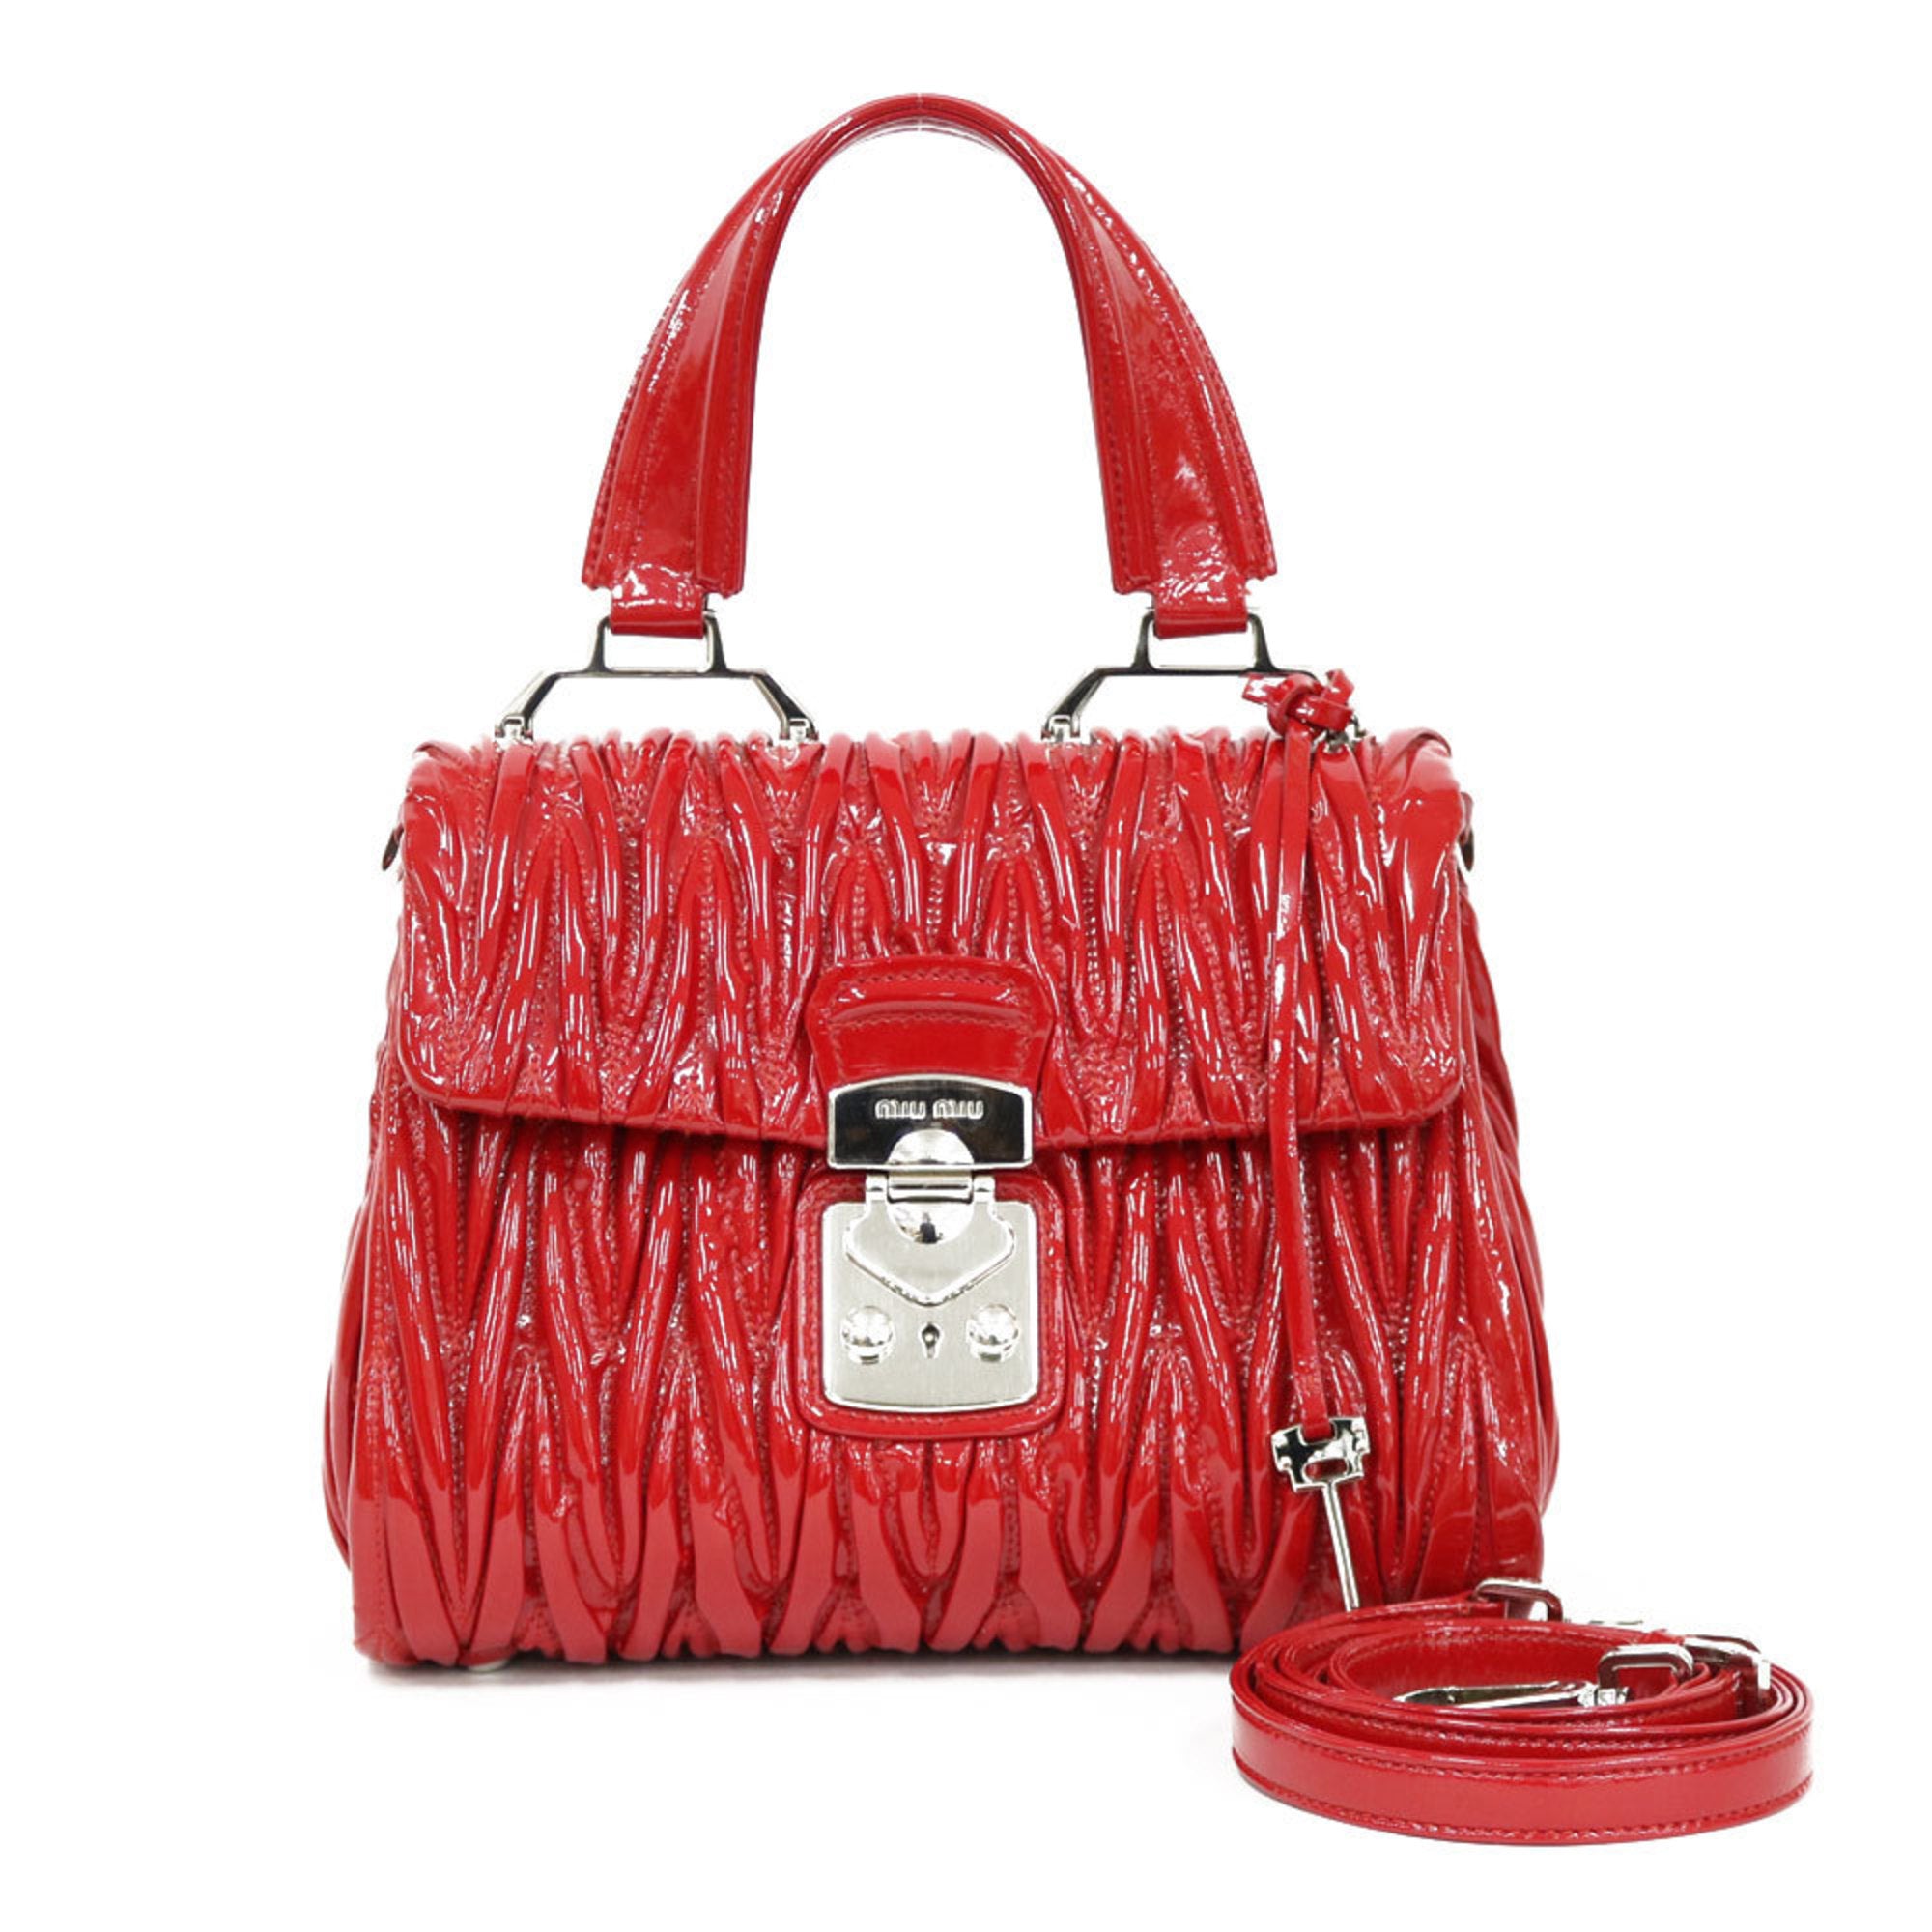 Miu Miu Leather Heart Bag Charm - Red Bag Accessories, Accessories -  MIU151780